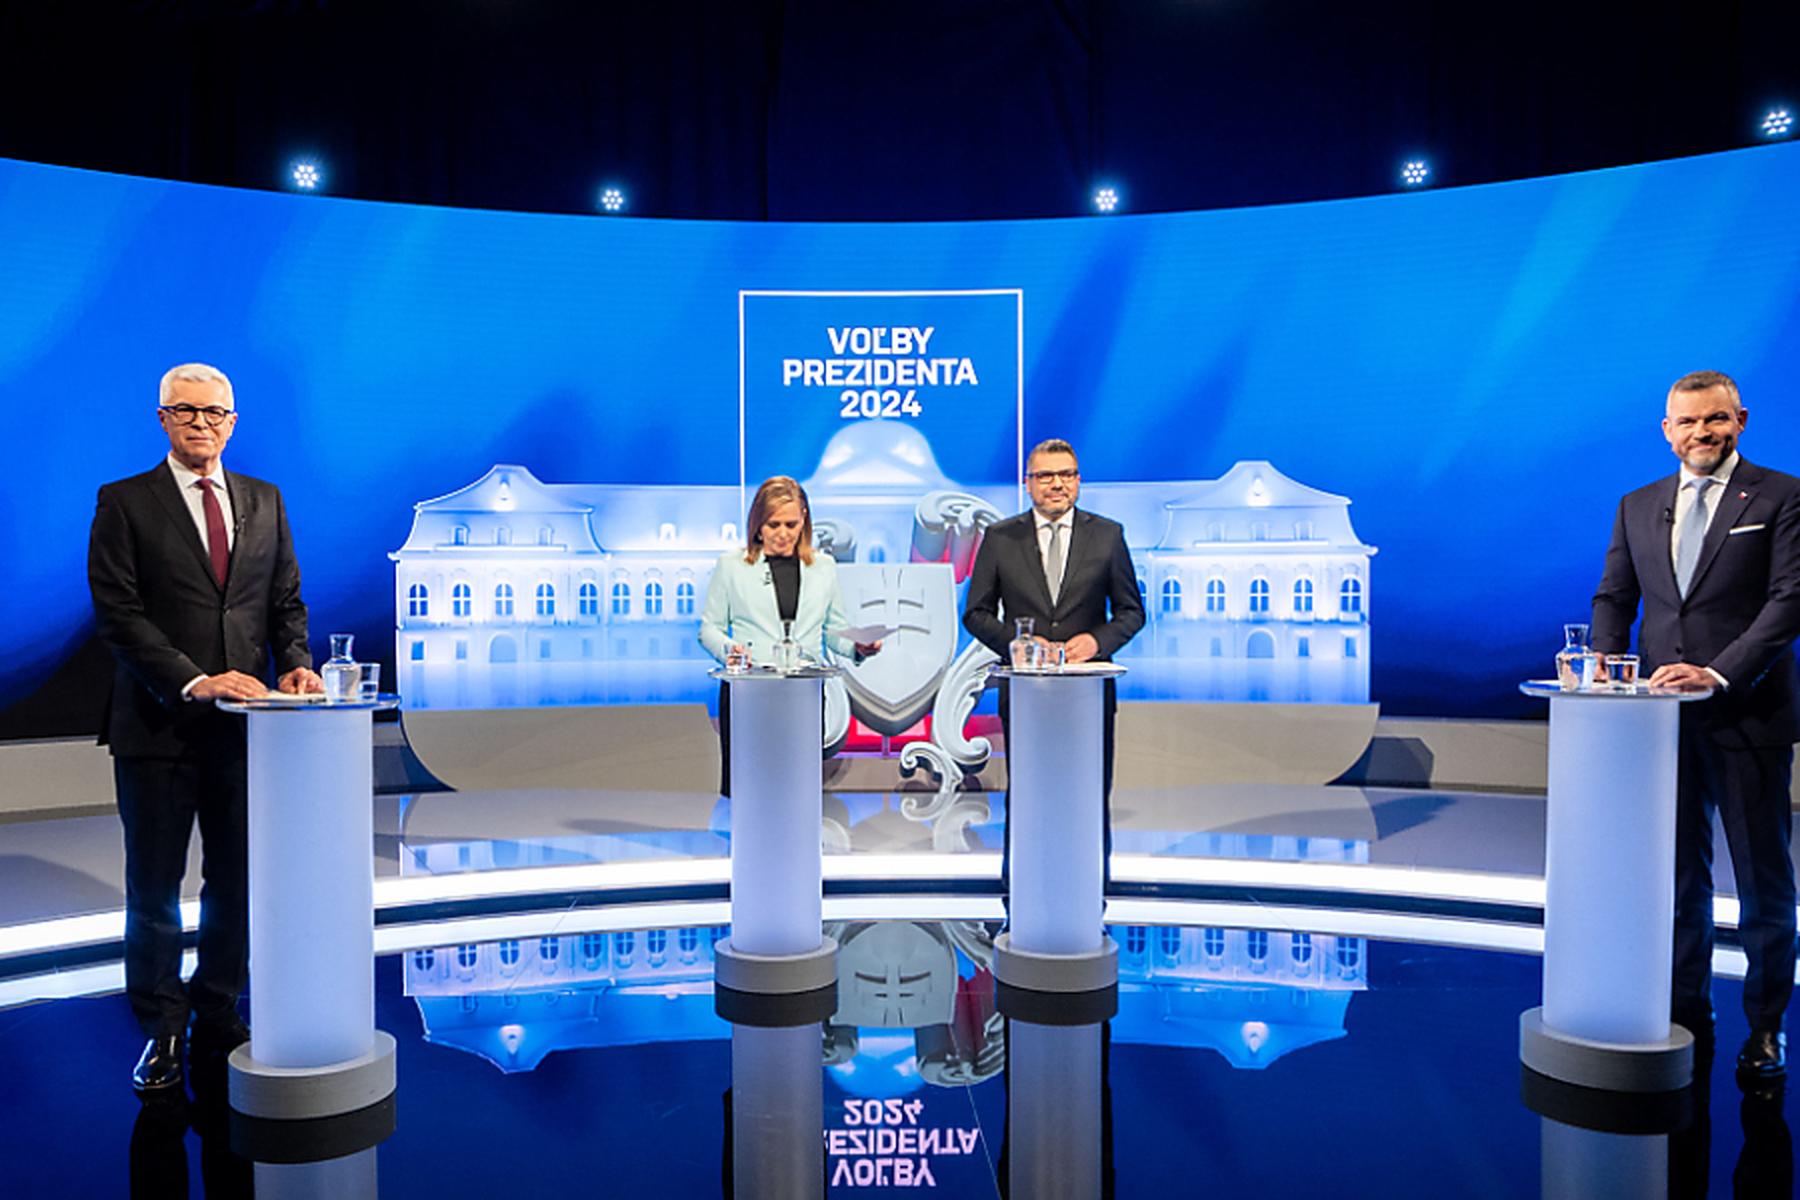 Bratislava: Stichwahl bei Präsidentenwahl in der Slowakei